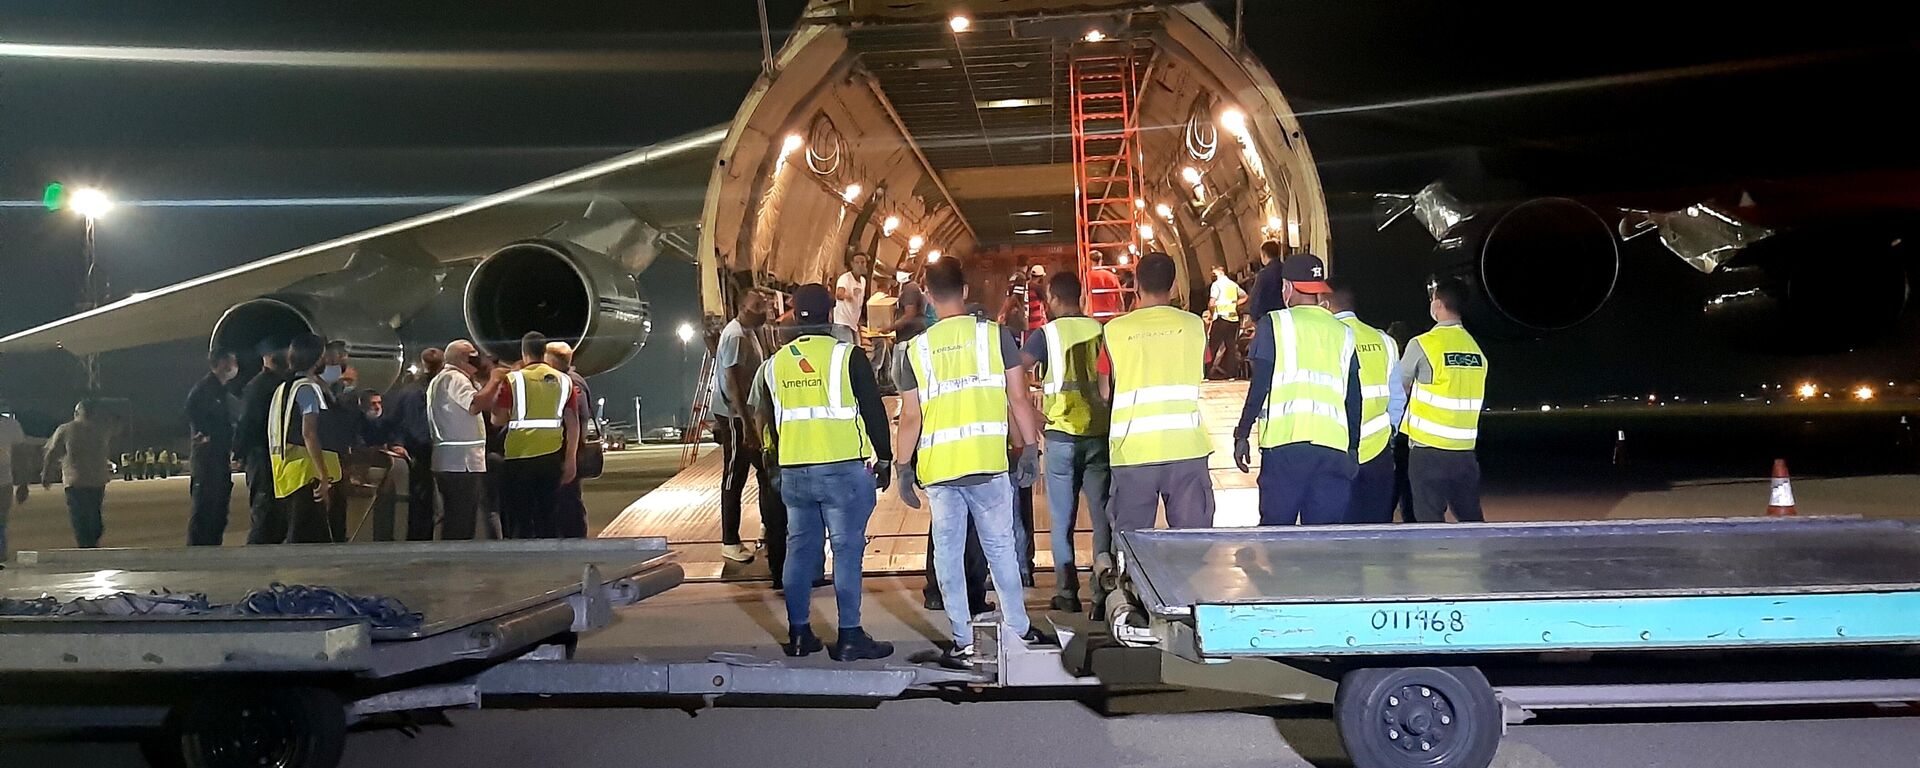 Aviones rusos An-124 Ruslan arriban a Cuba con cargamento de ayuda humanitaria - Sputnik Mundo, 1920, 30.07.2021